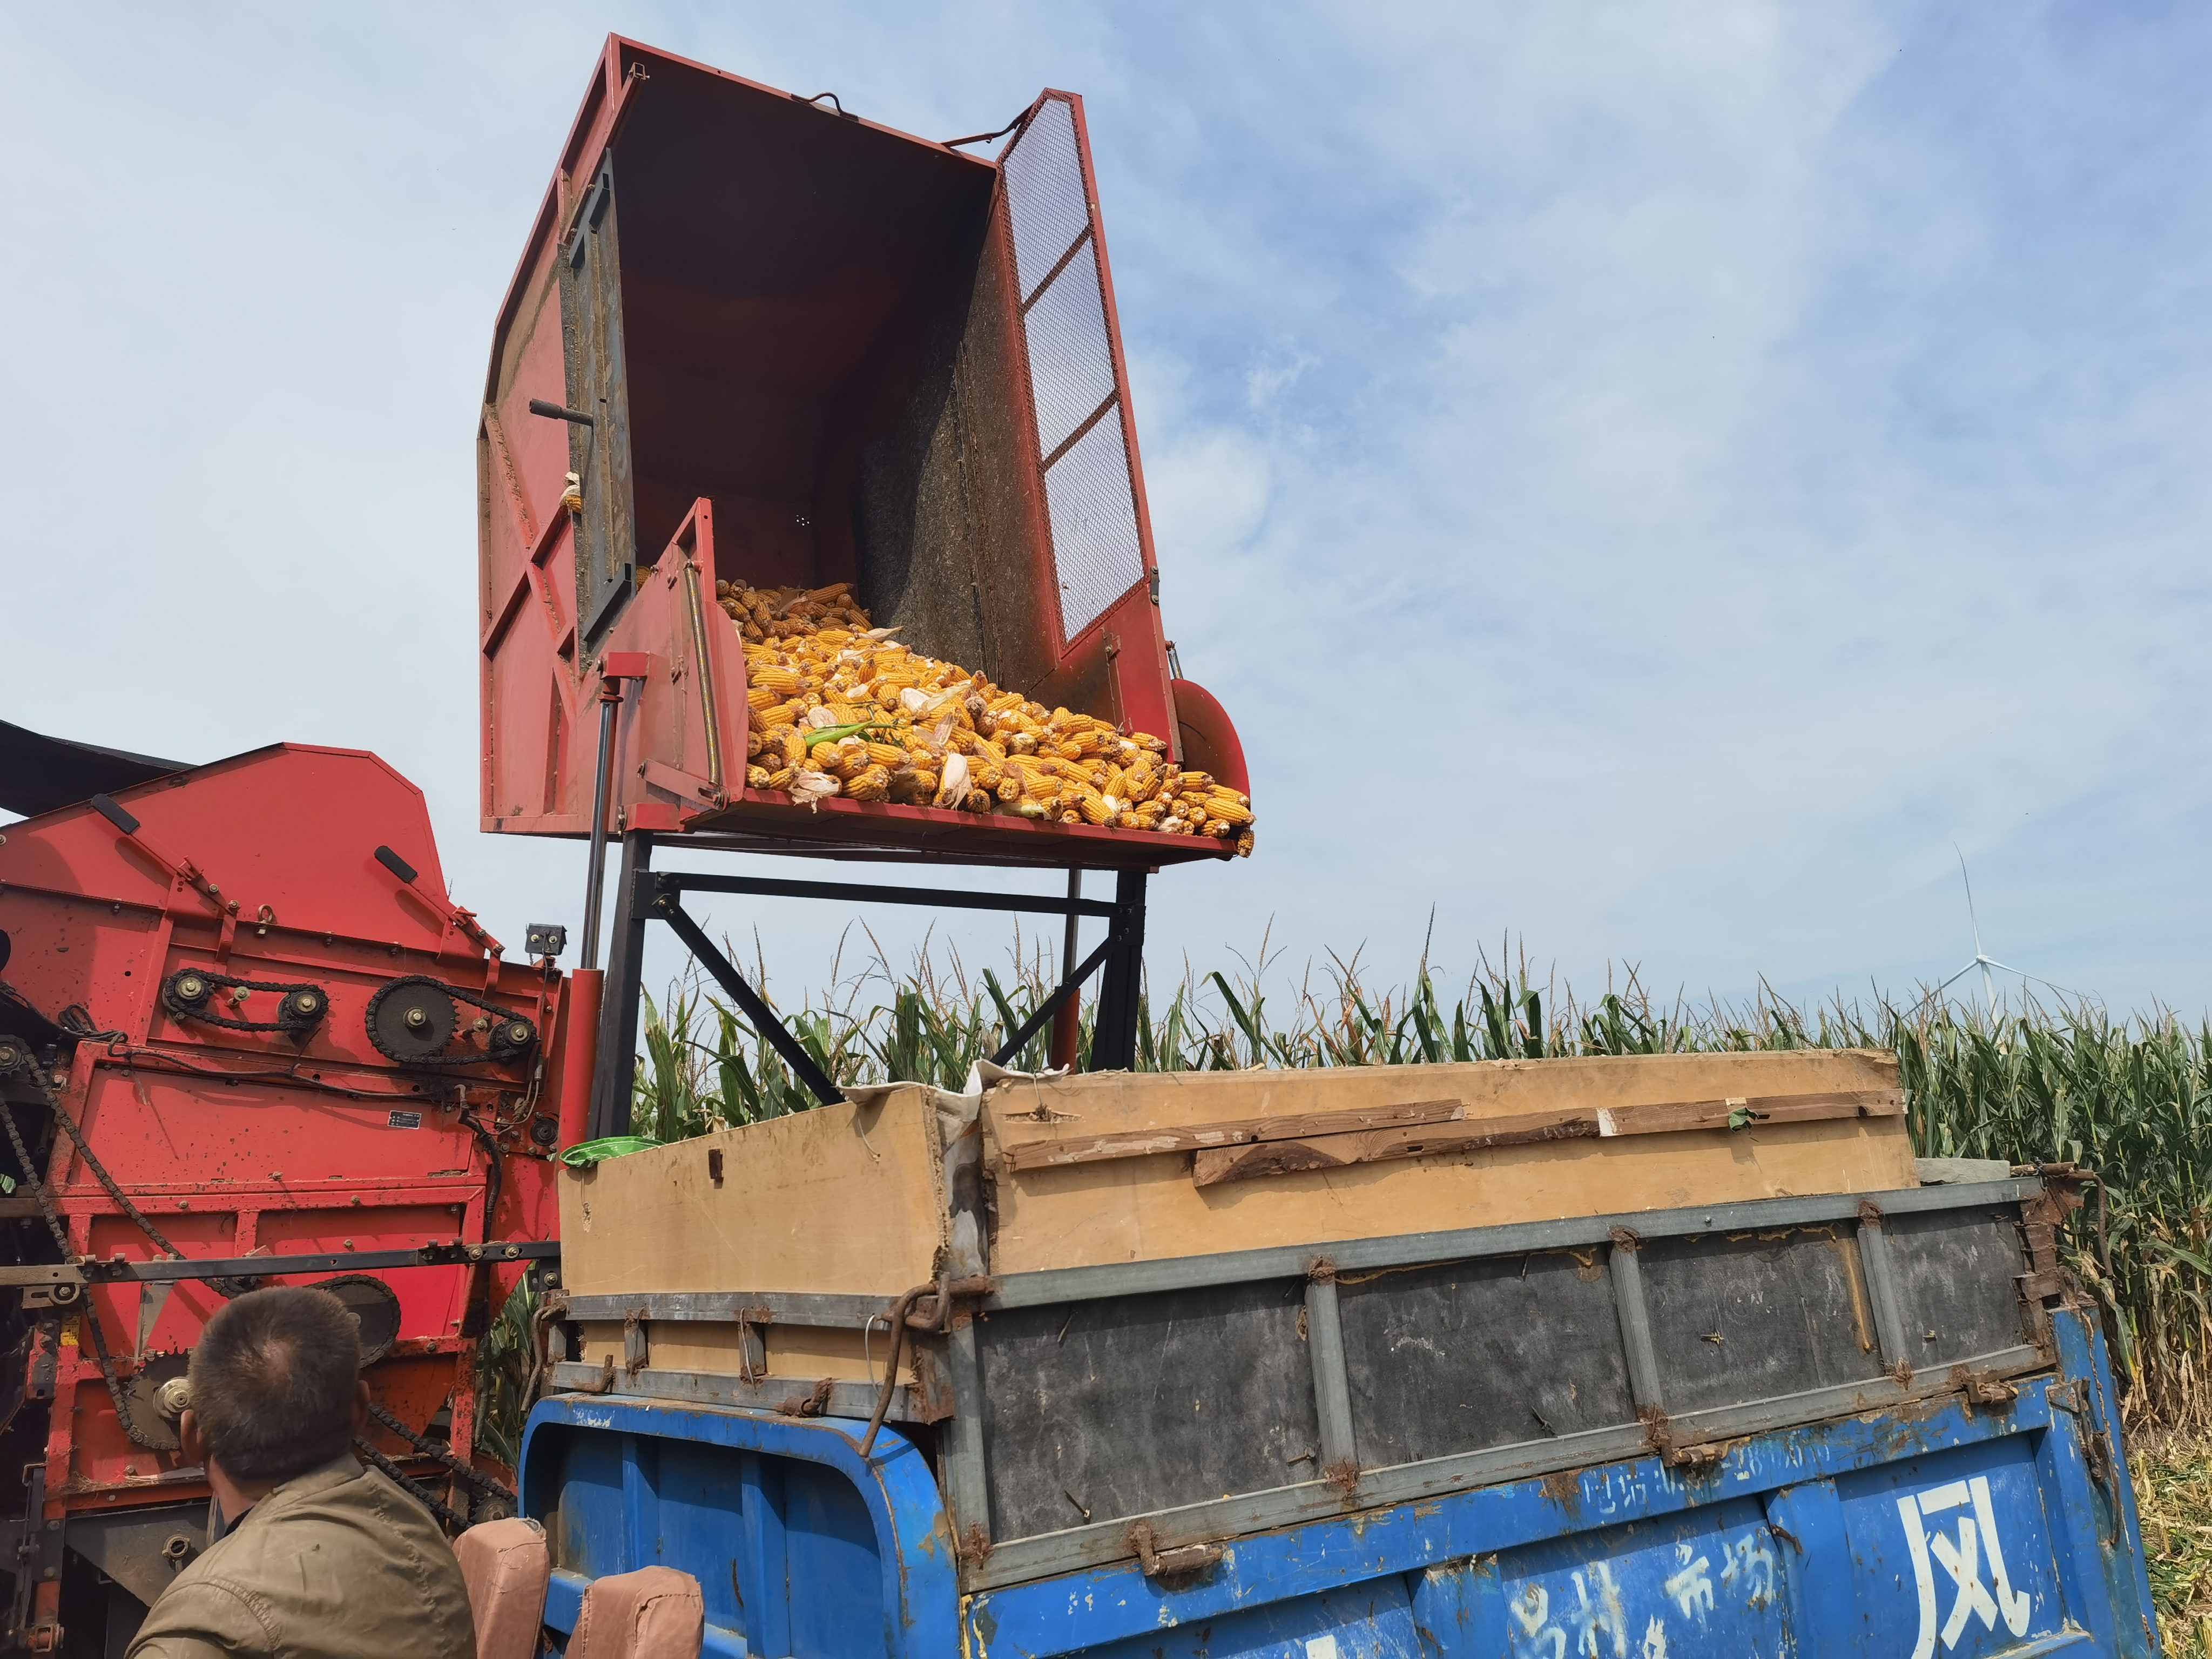 9月27日早上,在崔家桥镇隆化村村民老王种植的5亩玉米地里,大型玉米